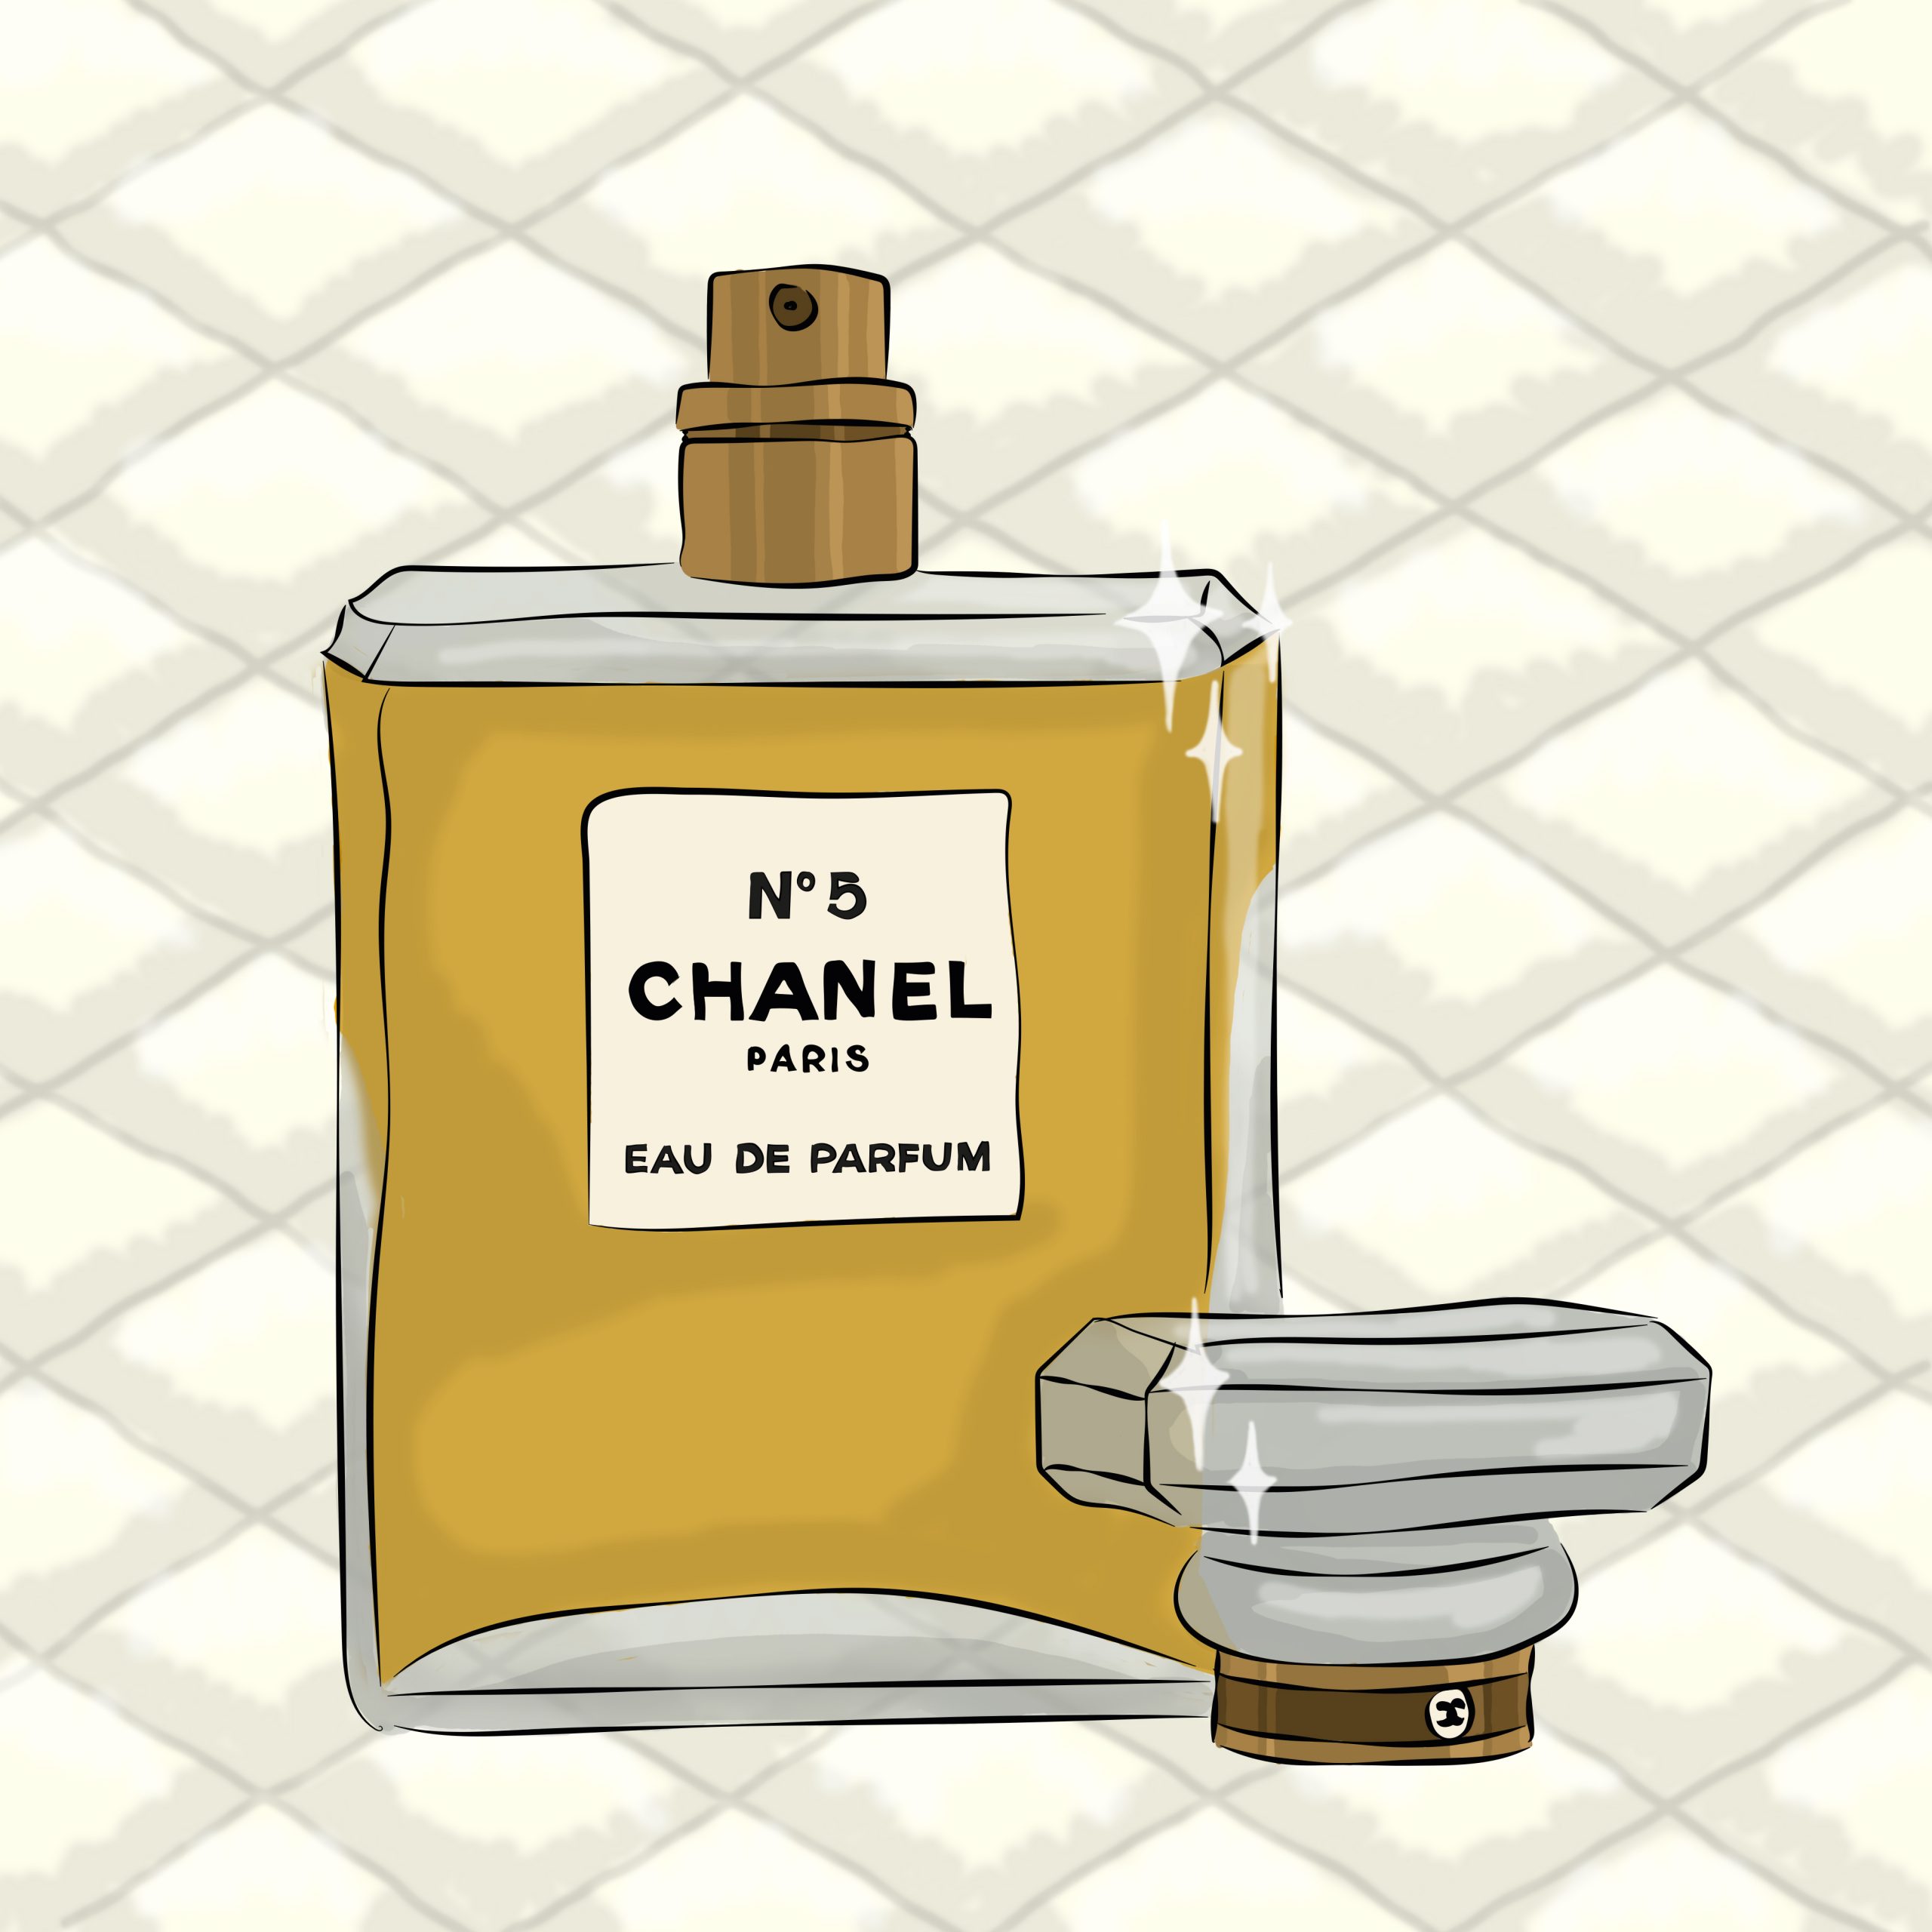 tekening met een flesje Chanel no. 5 parfum